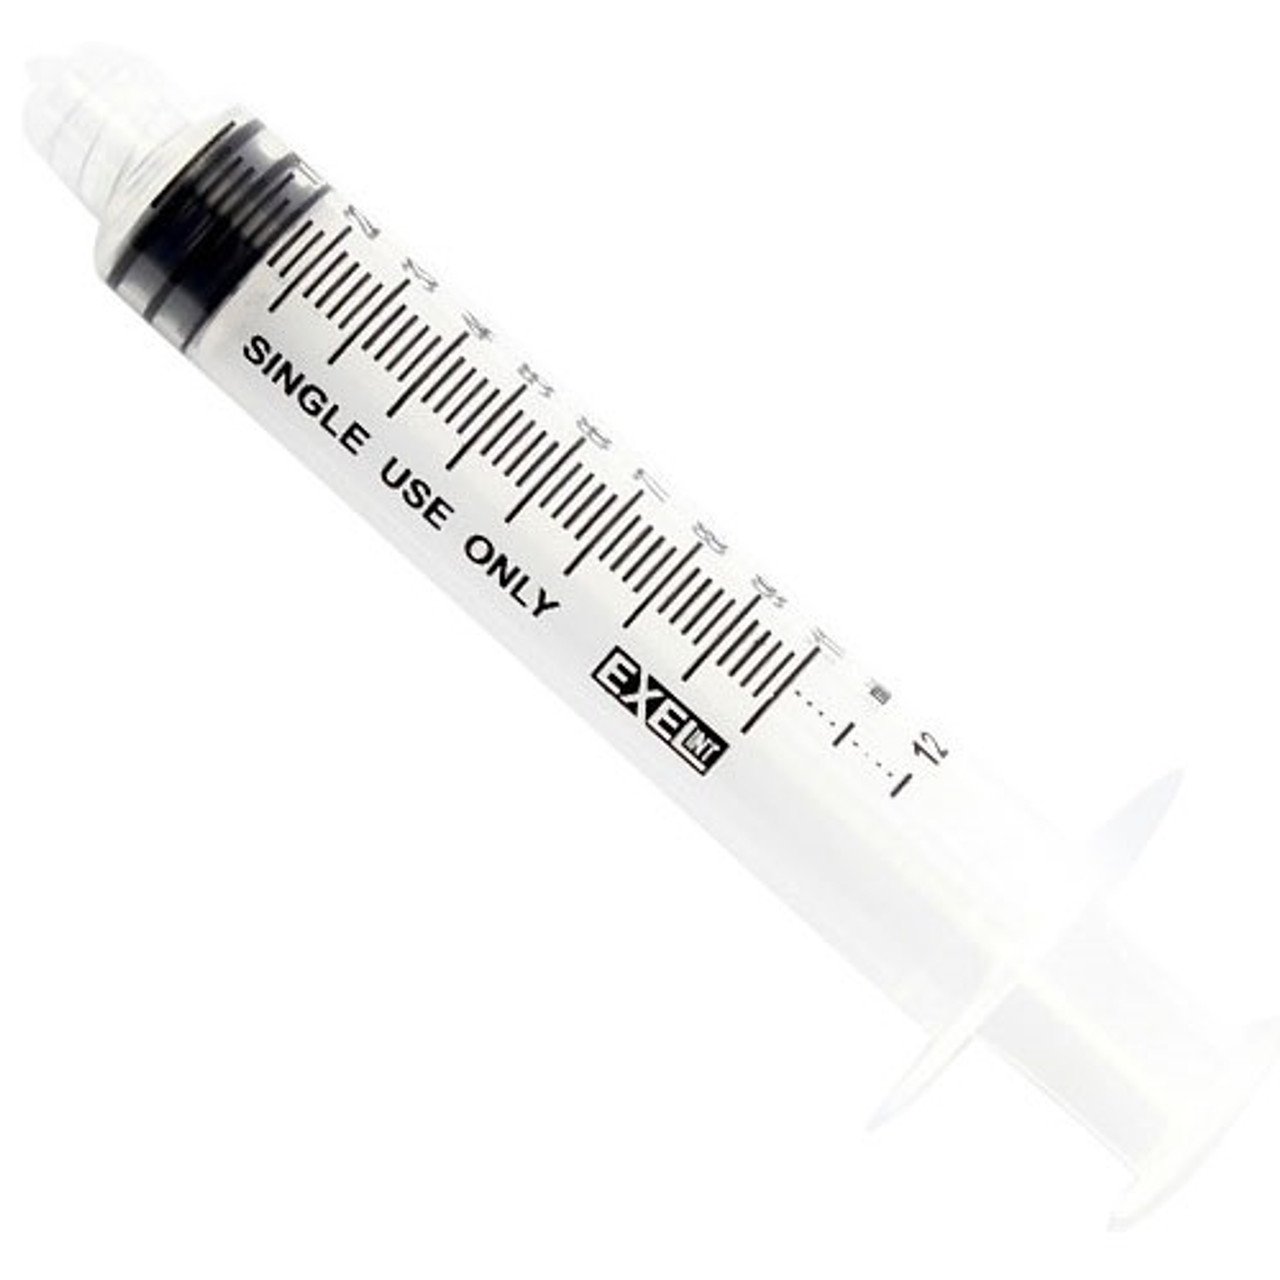 Syringes - Disposable Syringes - Syringes without Needle - Fu Kang